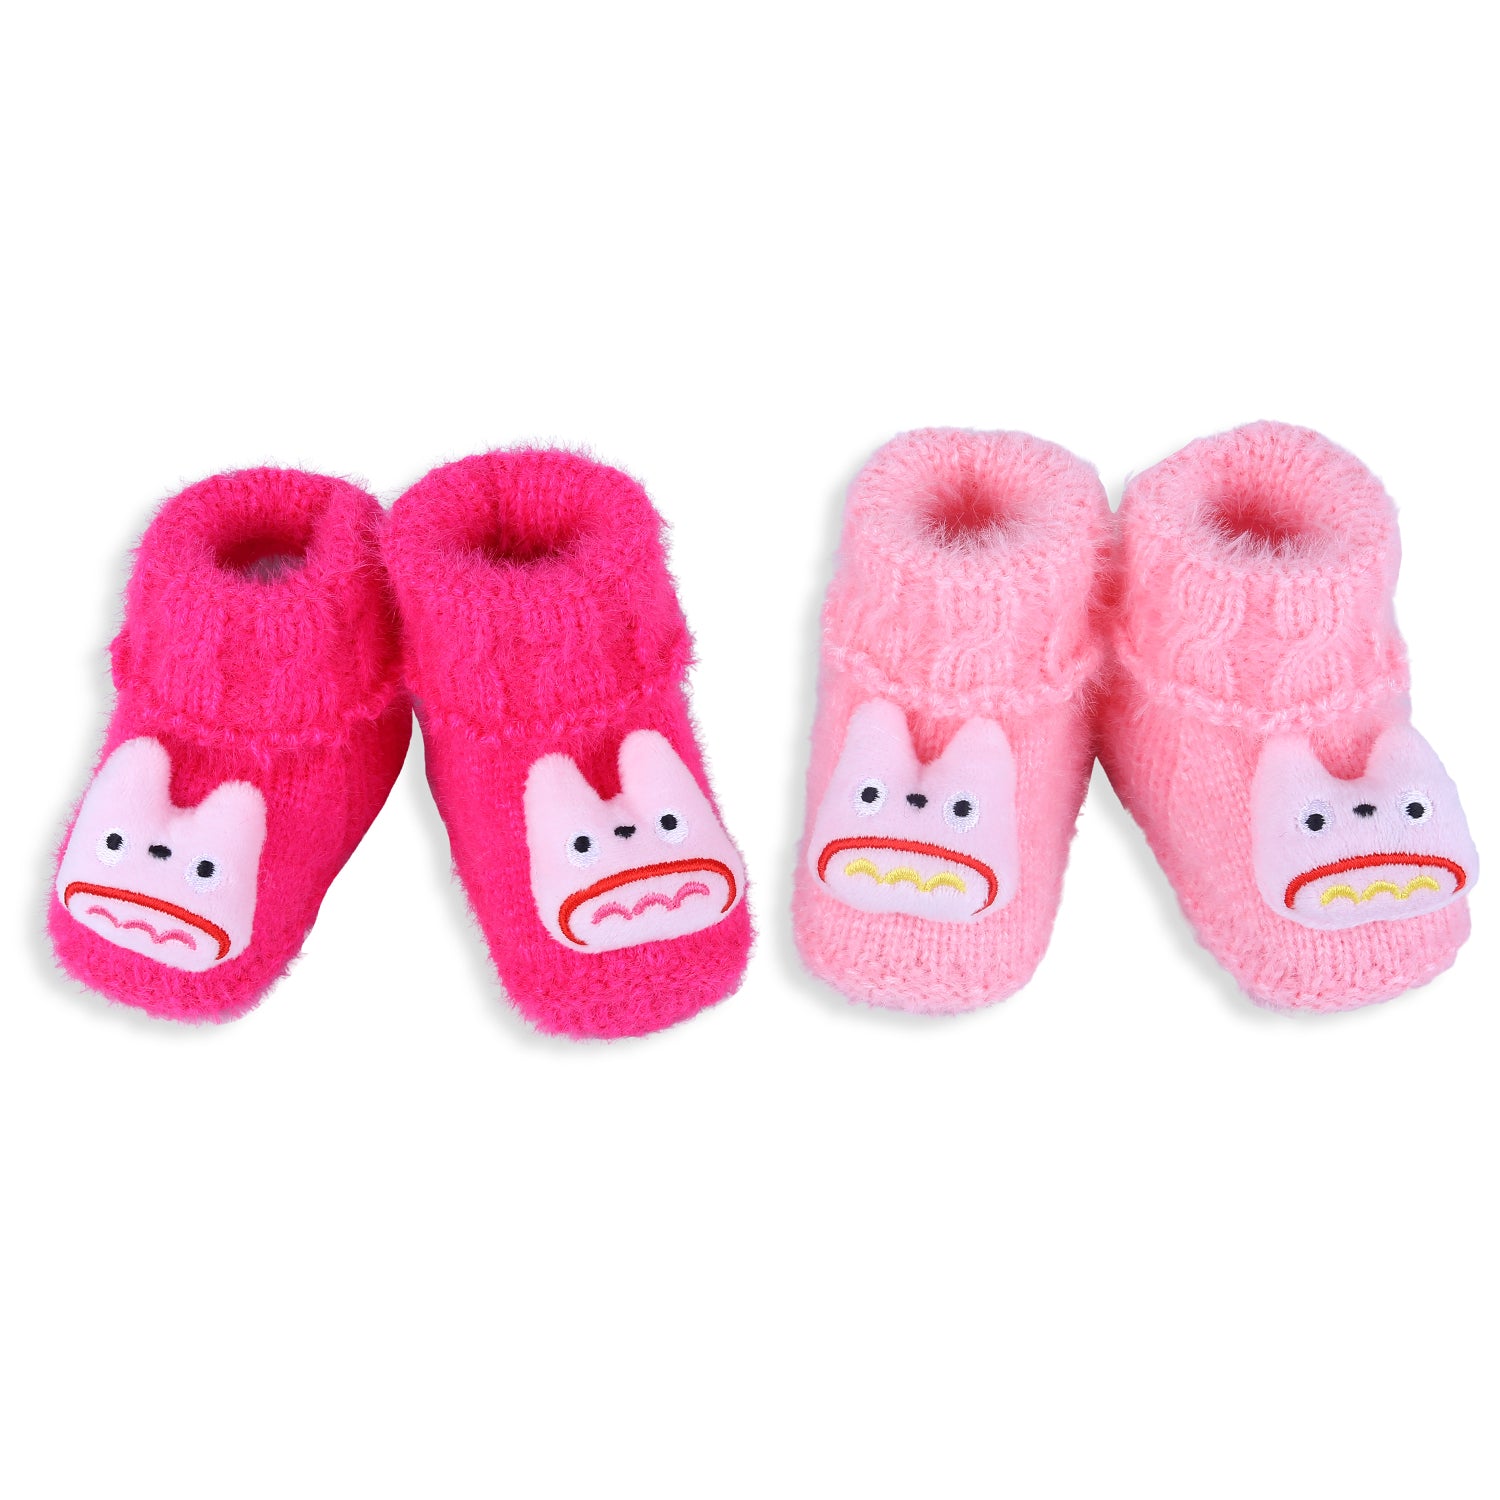 Baby Moo Cartoon Crochet Woollen 3D Socks Booties - Magenta - Baby Moo